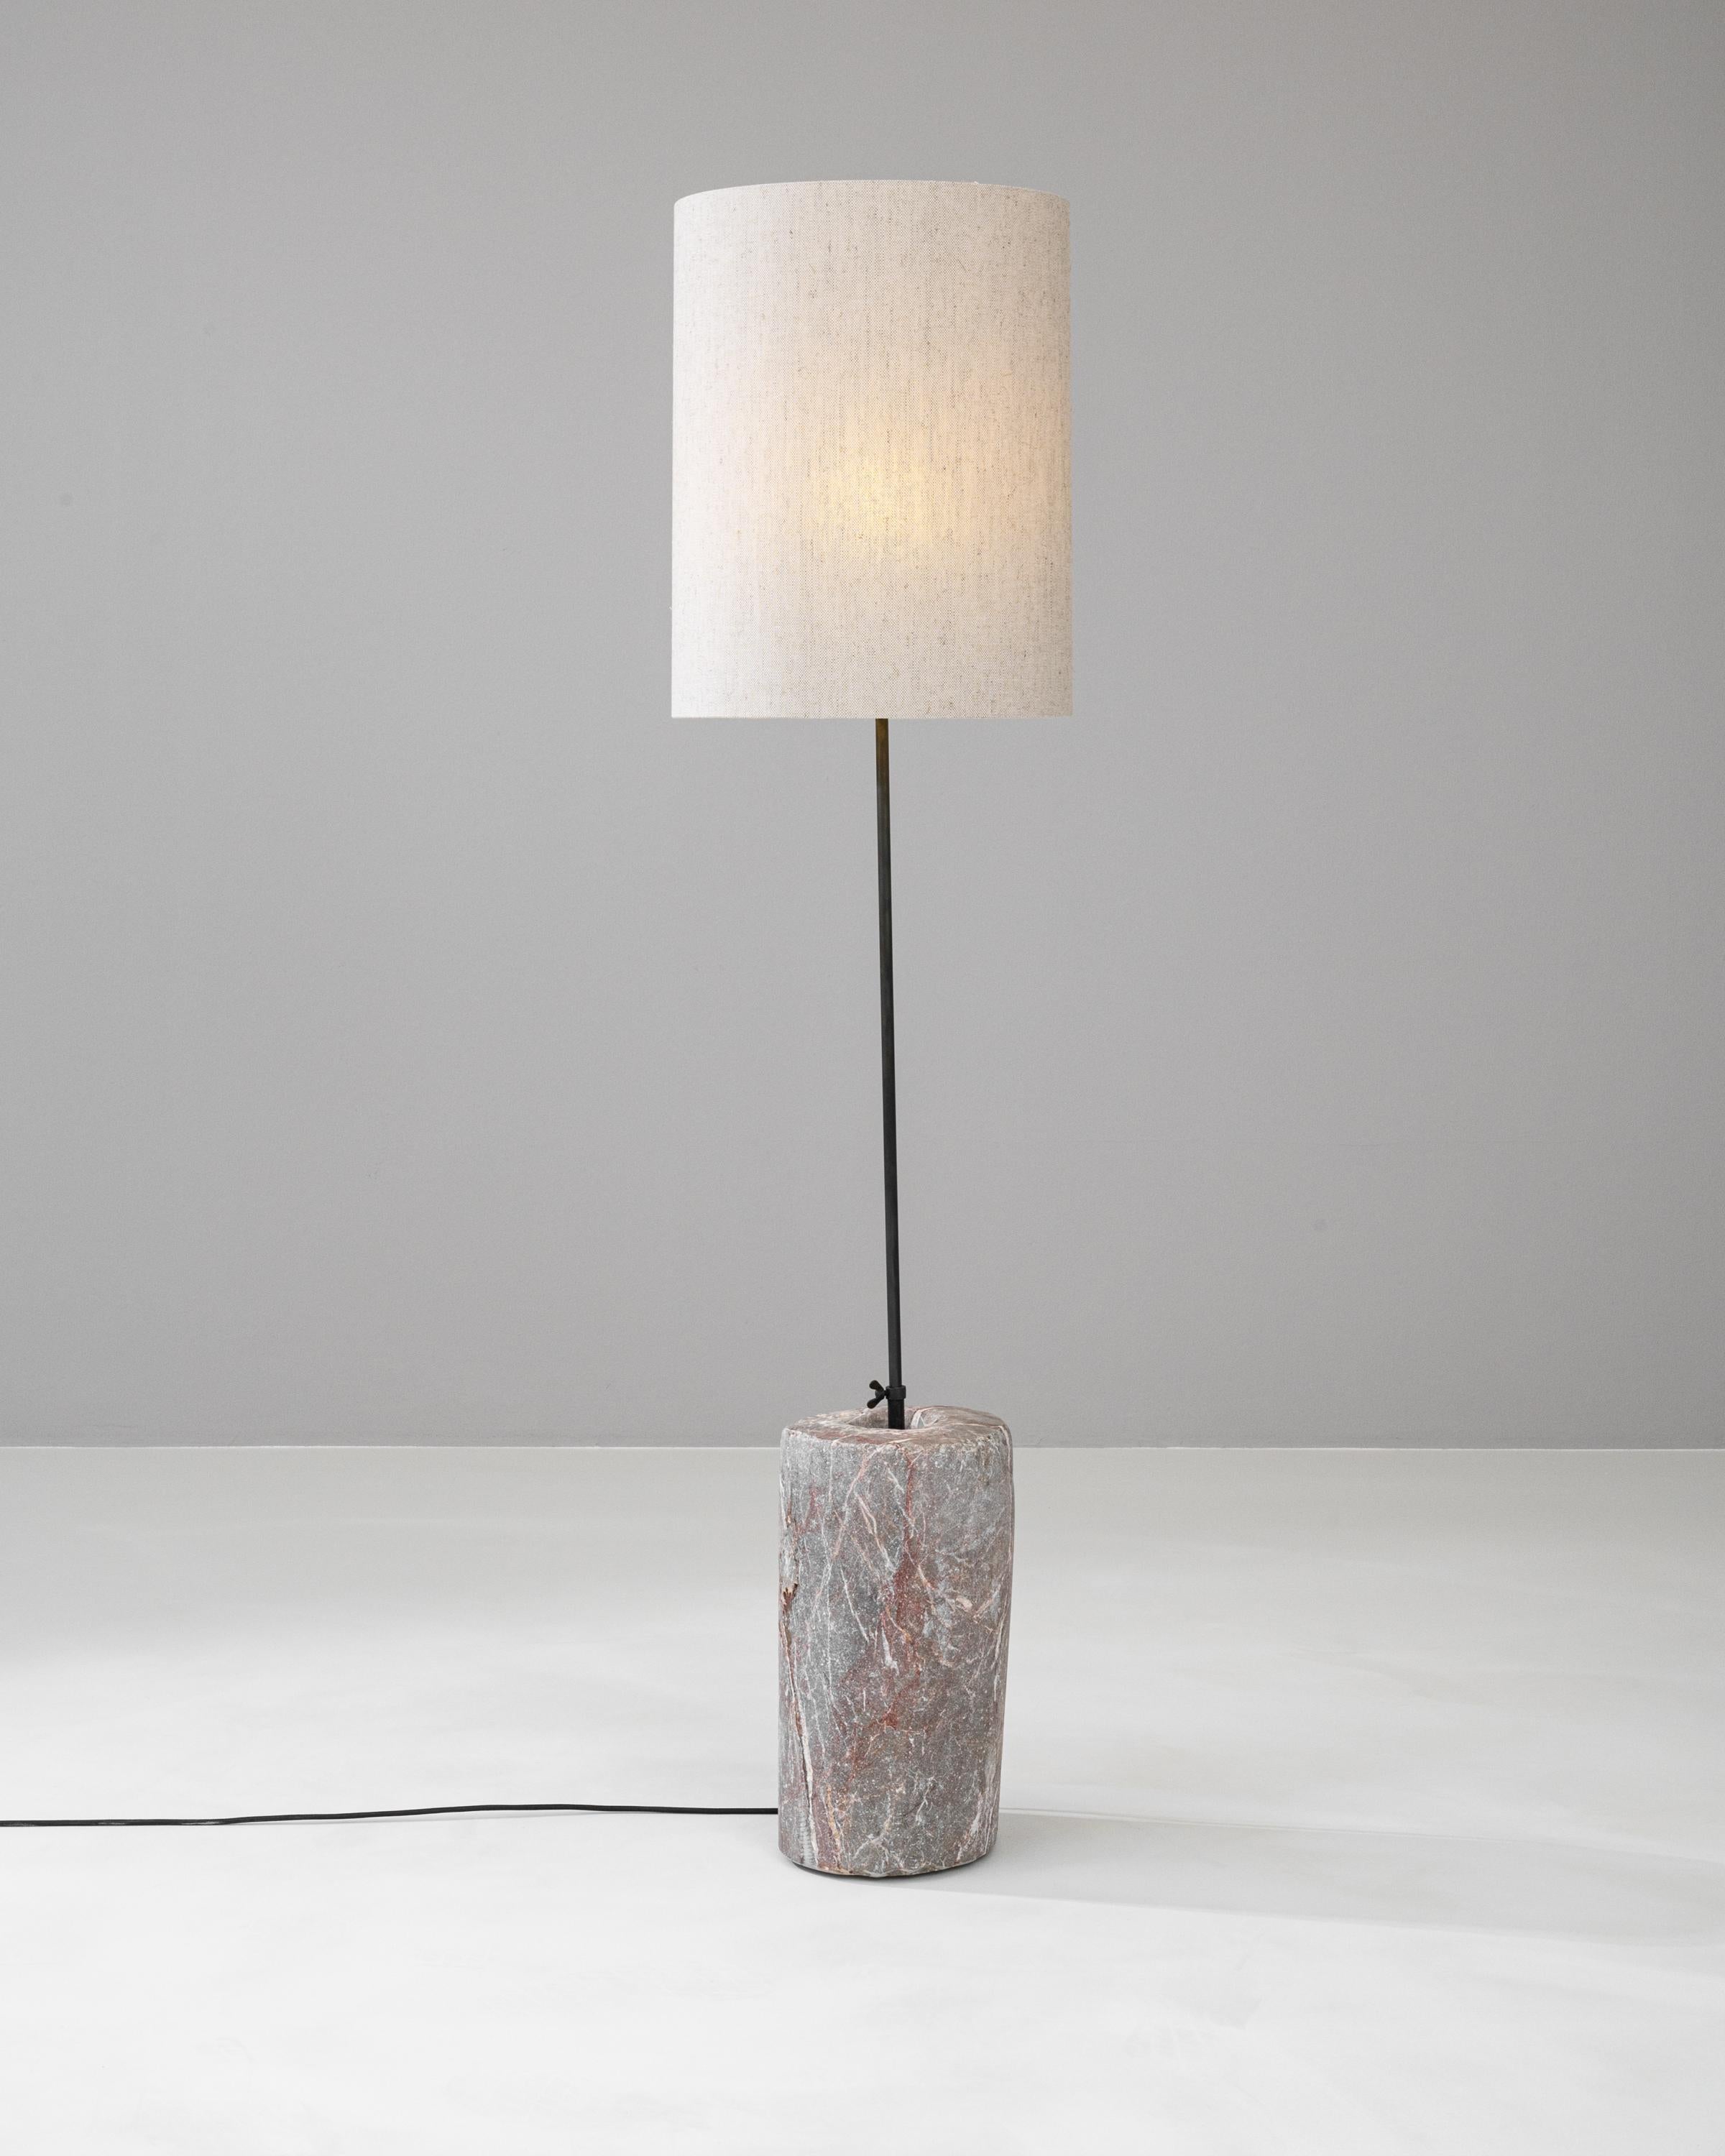 Beleuchten Sie Ihren Raum mit der zeitlosen Eleganz der 1900er European Marble & Metal Floor Lamp. Diese Stehlampe zelebriert den klassischen Stil und die Raffinesse und verfügt über einen Sockel aus echtem Marmor, dessen einzigartige Muster und